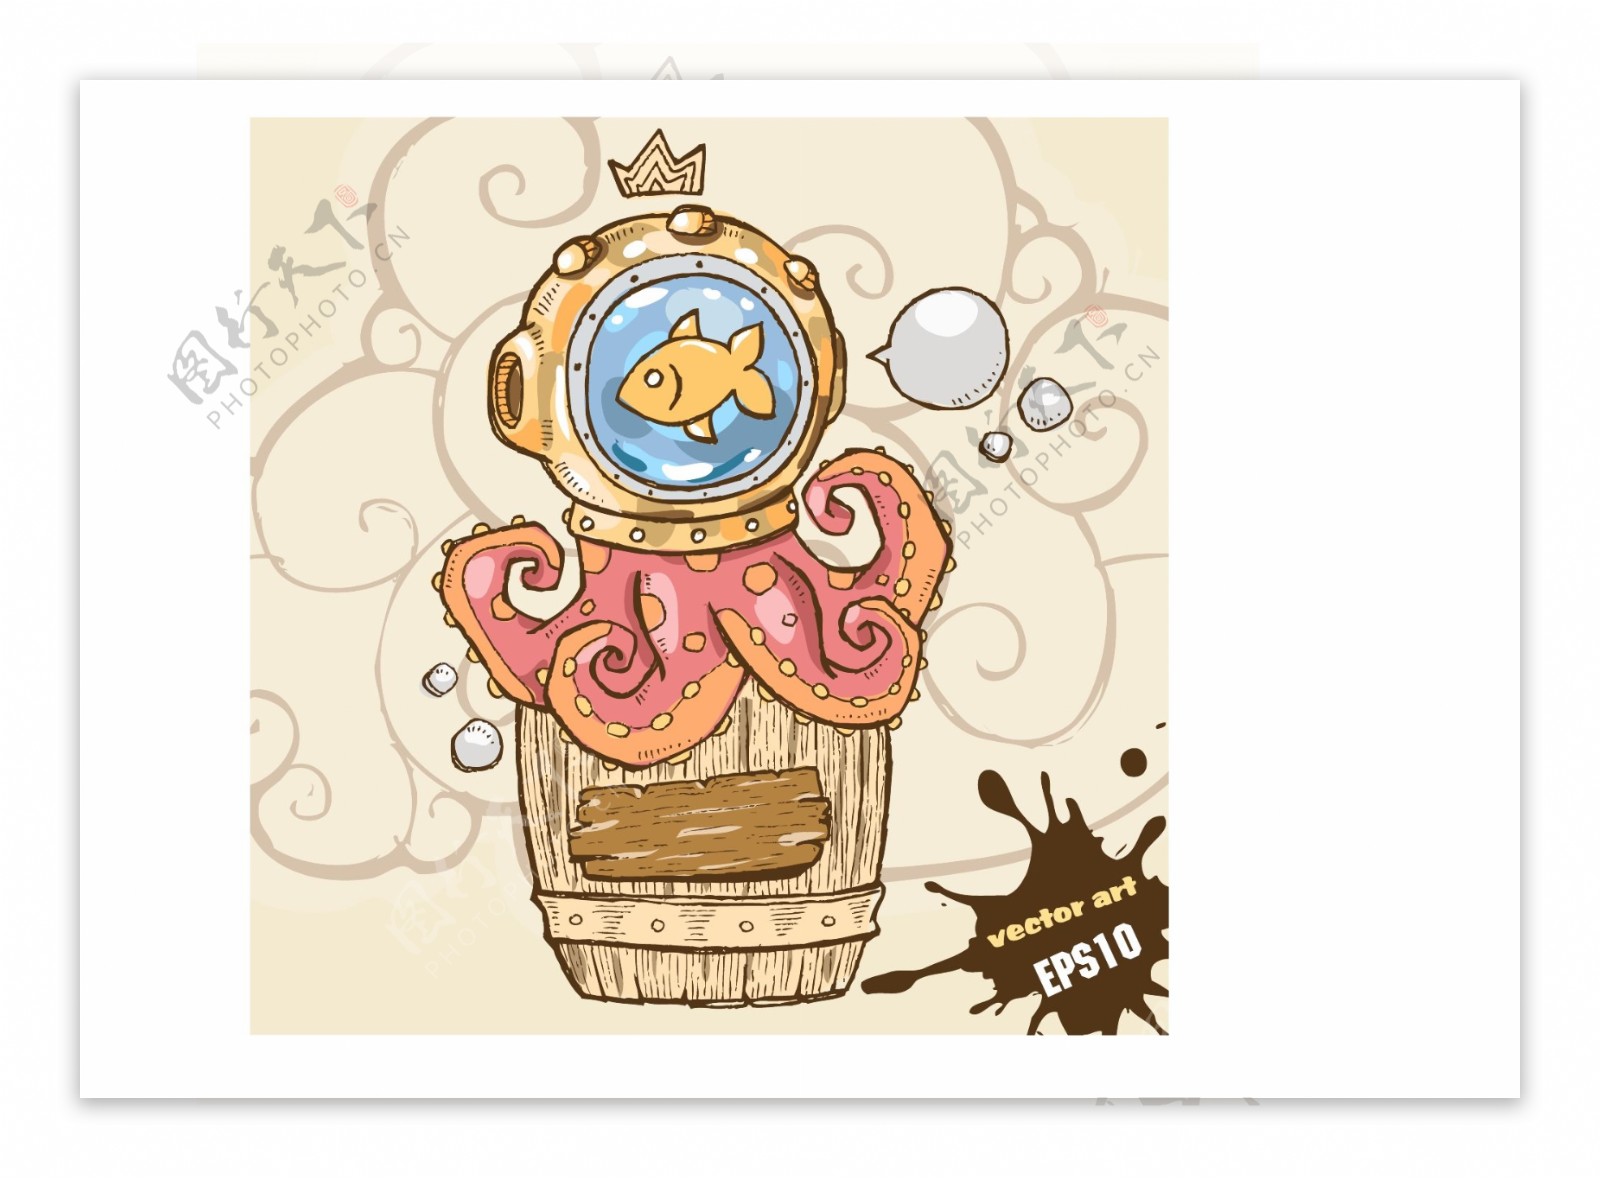 卡通坐在桶上的章鱼矢量素材